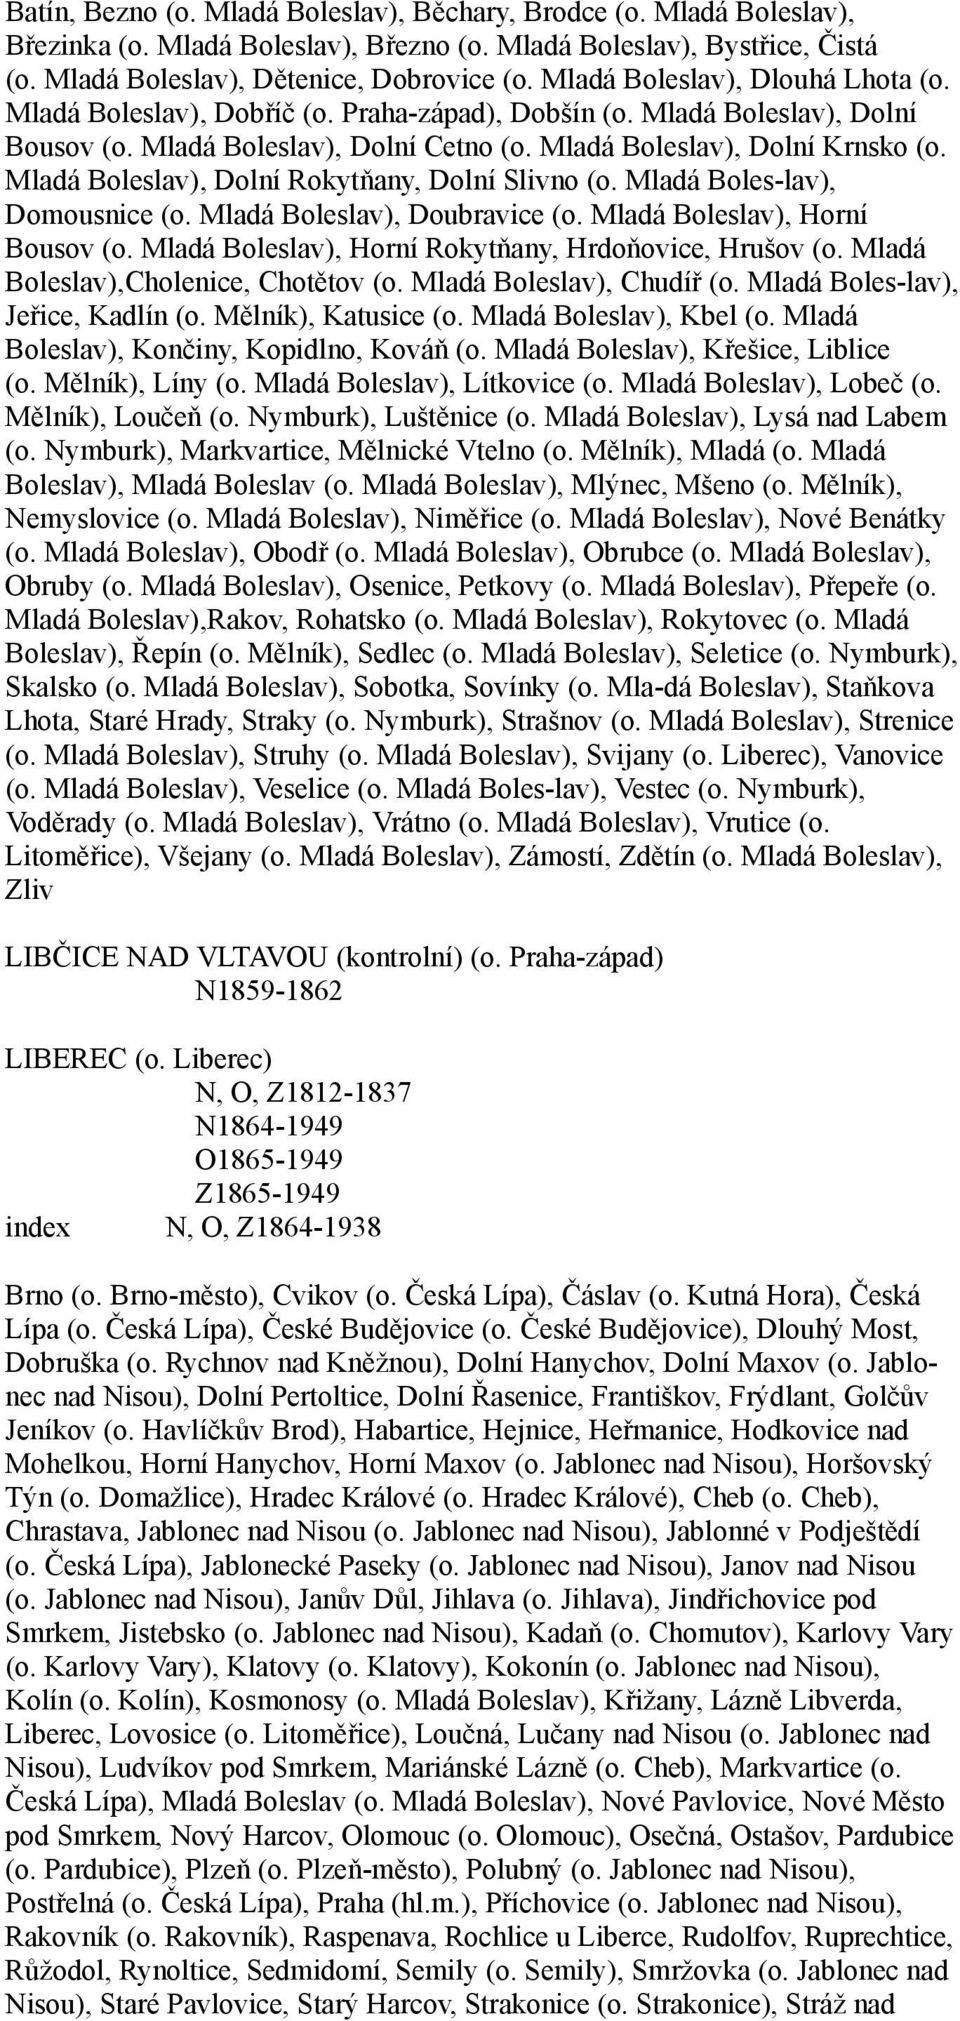 Mladá Boleslav), Dolní Rokytňany, Dolní Slivno (o. Mladá Boles-lav), Domousnice (o. Mladá Boleslav), Doubravice (o. Mladá Boleslav), Horní Bousov (o.